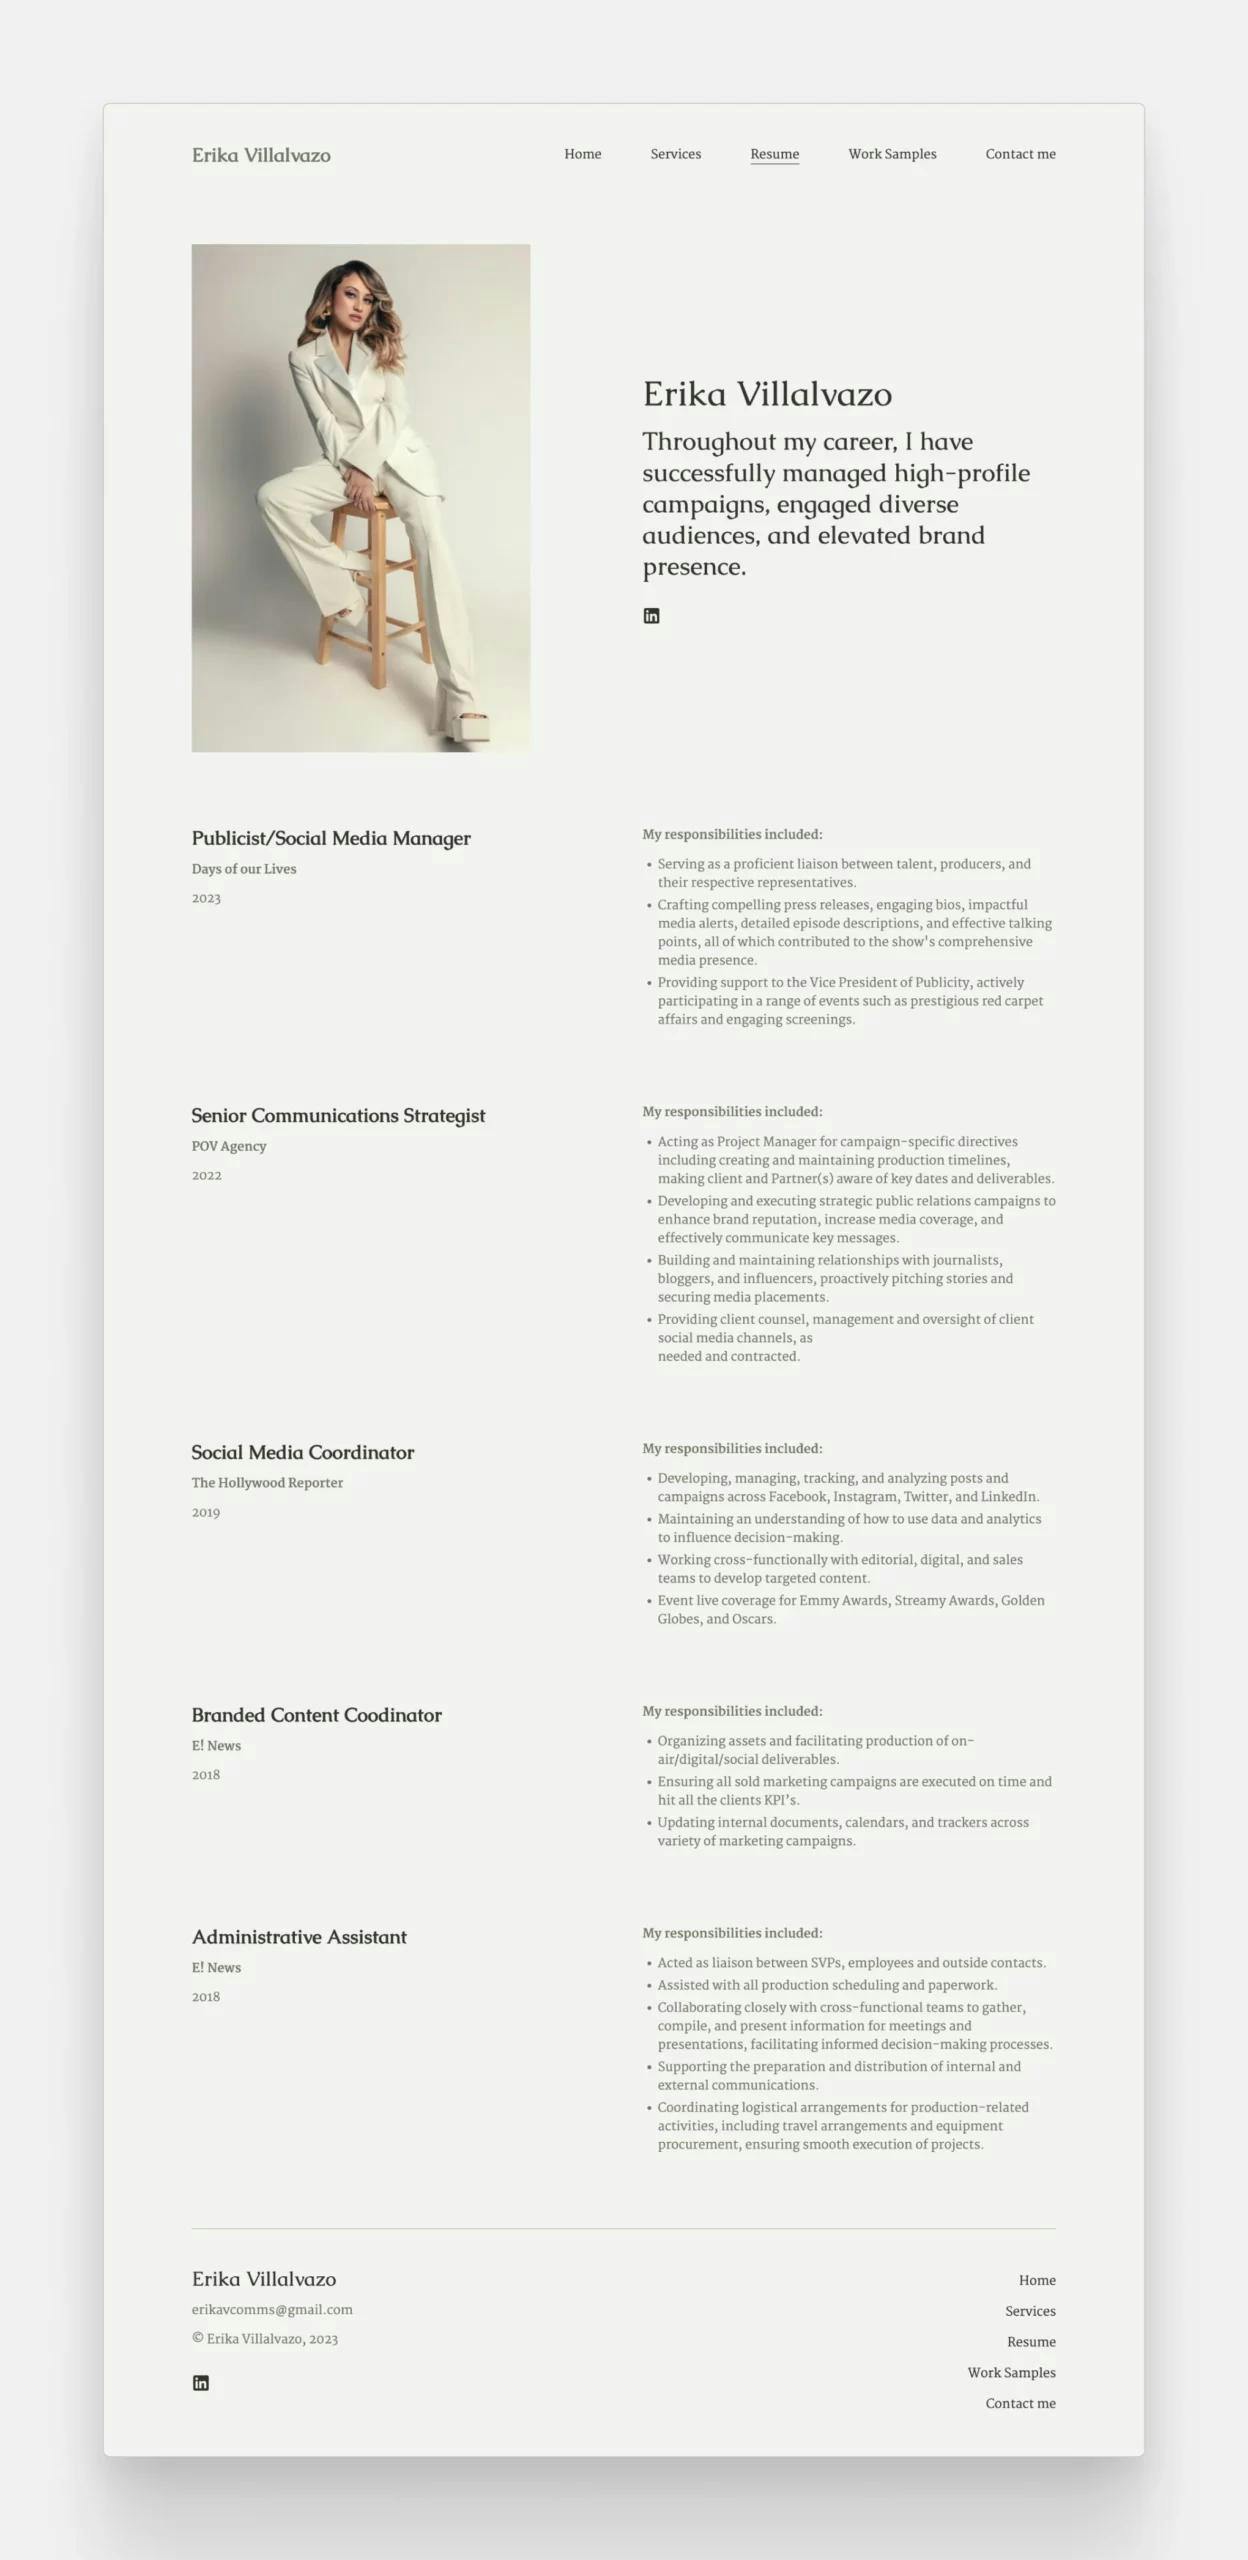 Erika's PR resume, featured on her portfolio website